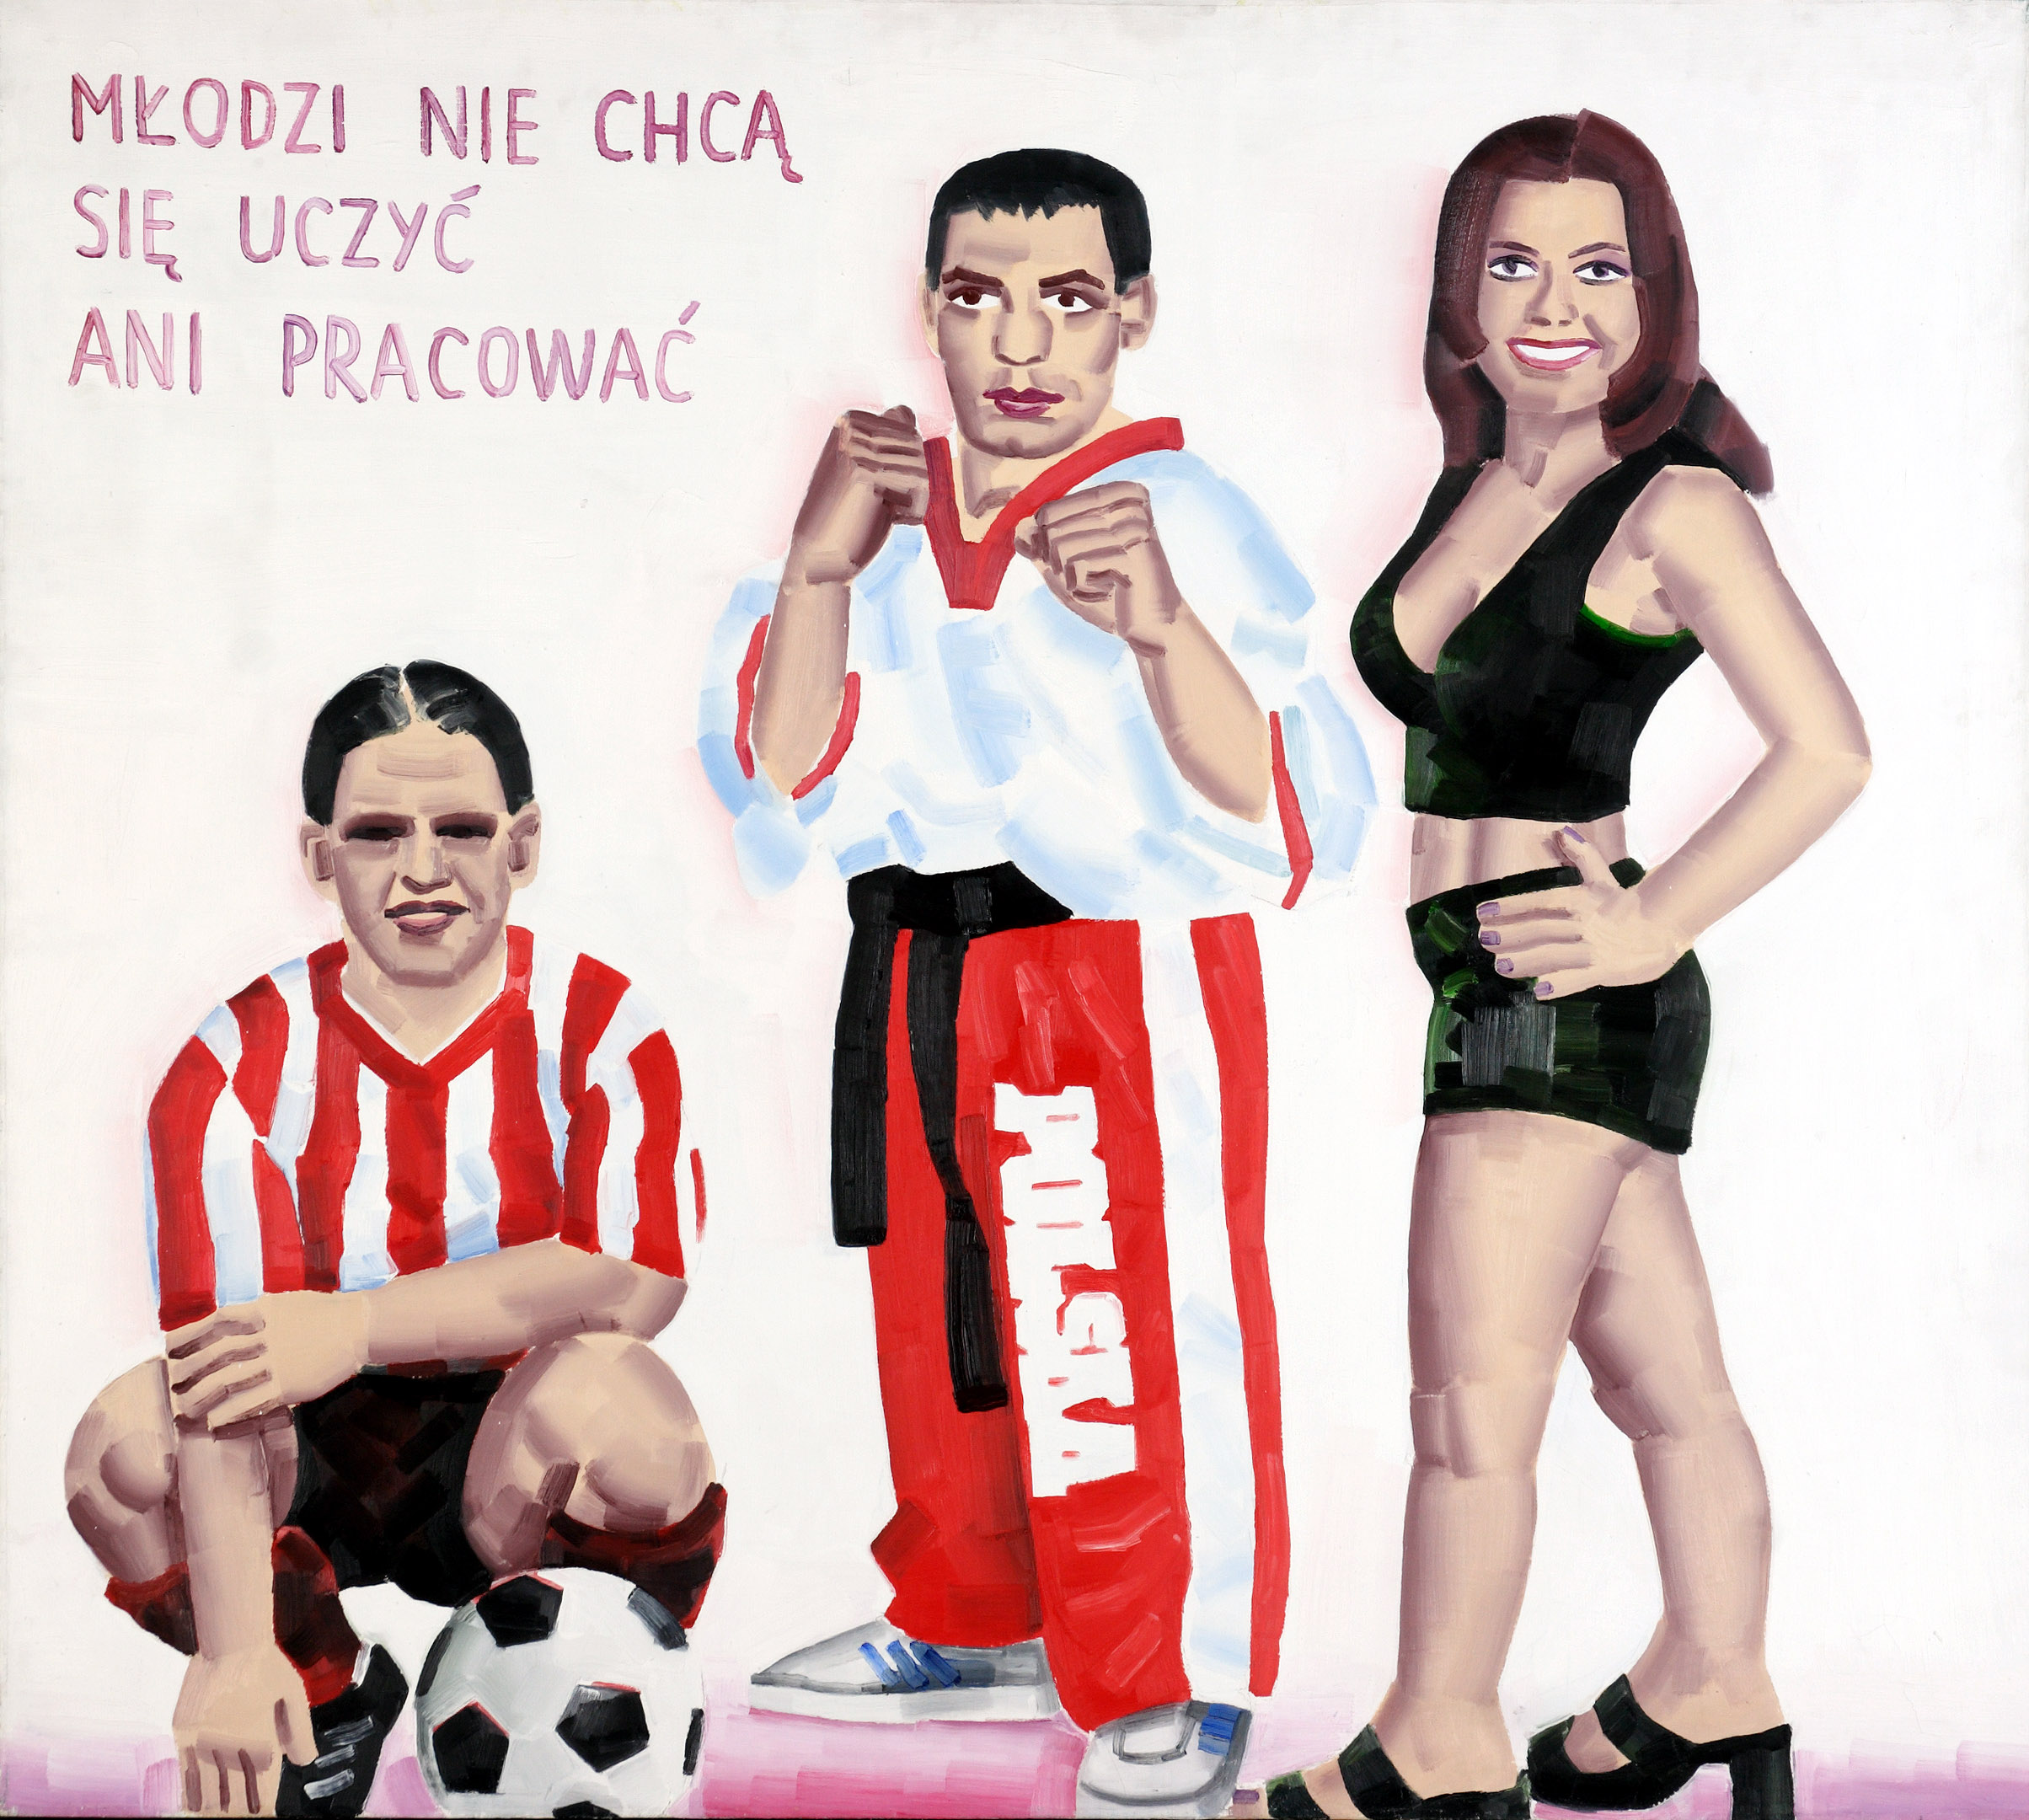 Młodzi nie chcą się uczyć ani pracować by Marcin Maciejowski - 2000 - 112,5 × 125,5 cm 